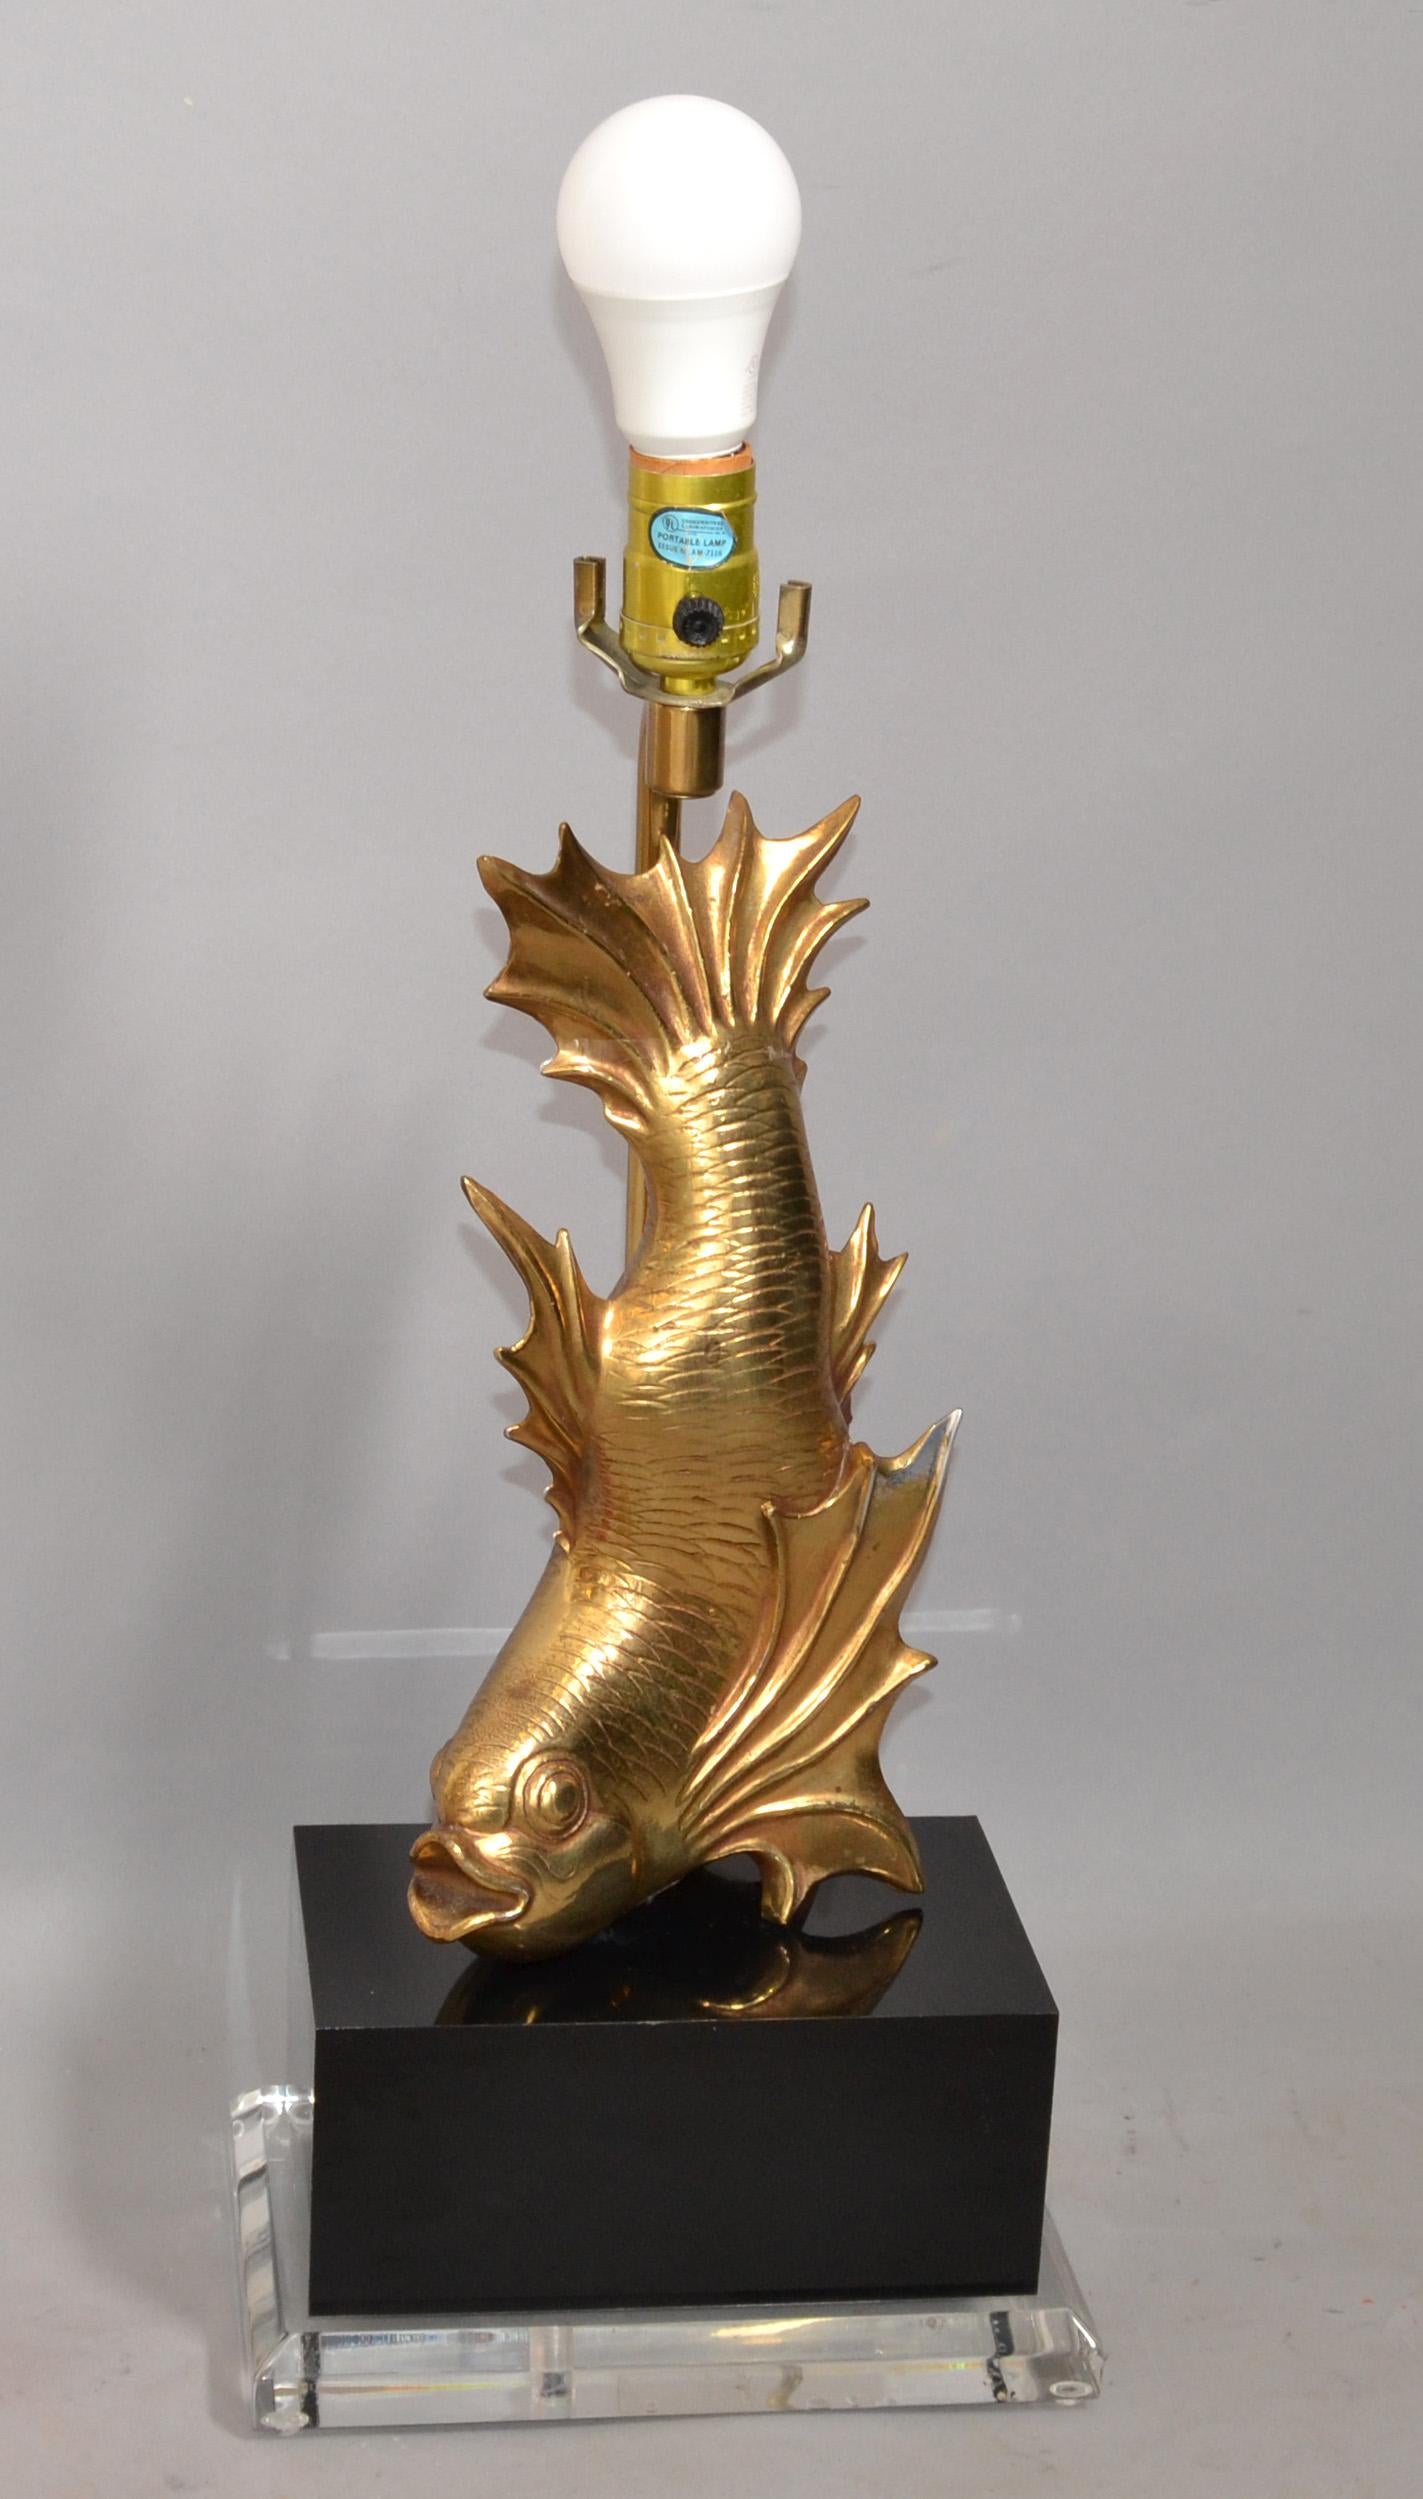 Lampe de table Dragon japonais stylisé en laiton moulé Poisson Koi monté sur une base en Lucite biseautée transparente et un bloc rectangulaire en acrylique noir.
Le Condit est en parfait état de fonctionnement, câblé pour les Etats-Unis, listé UL